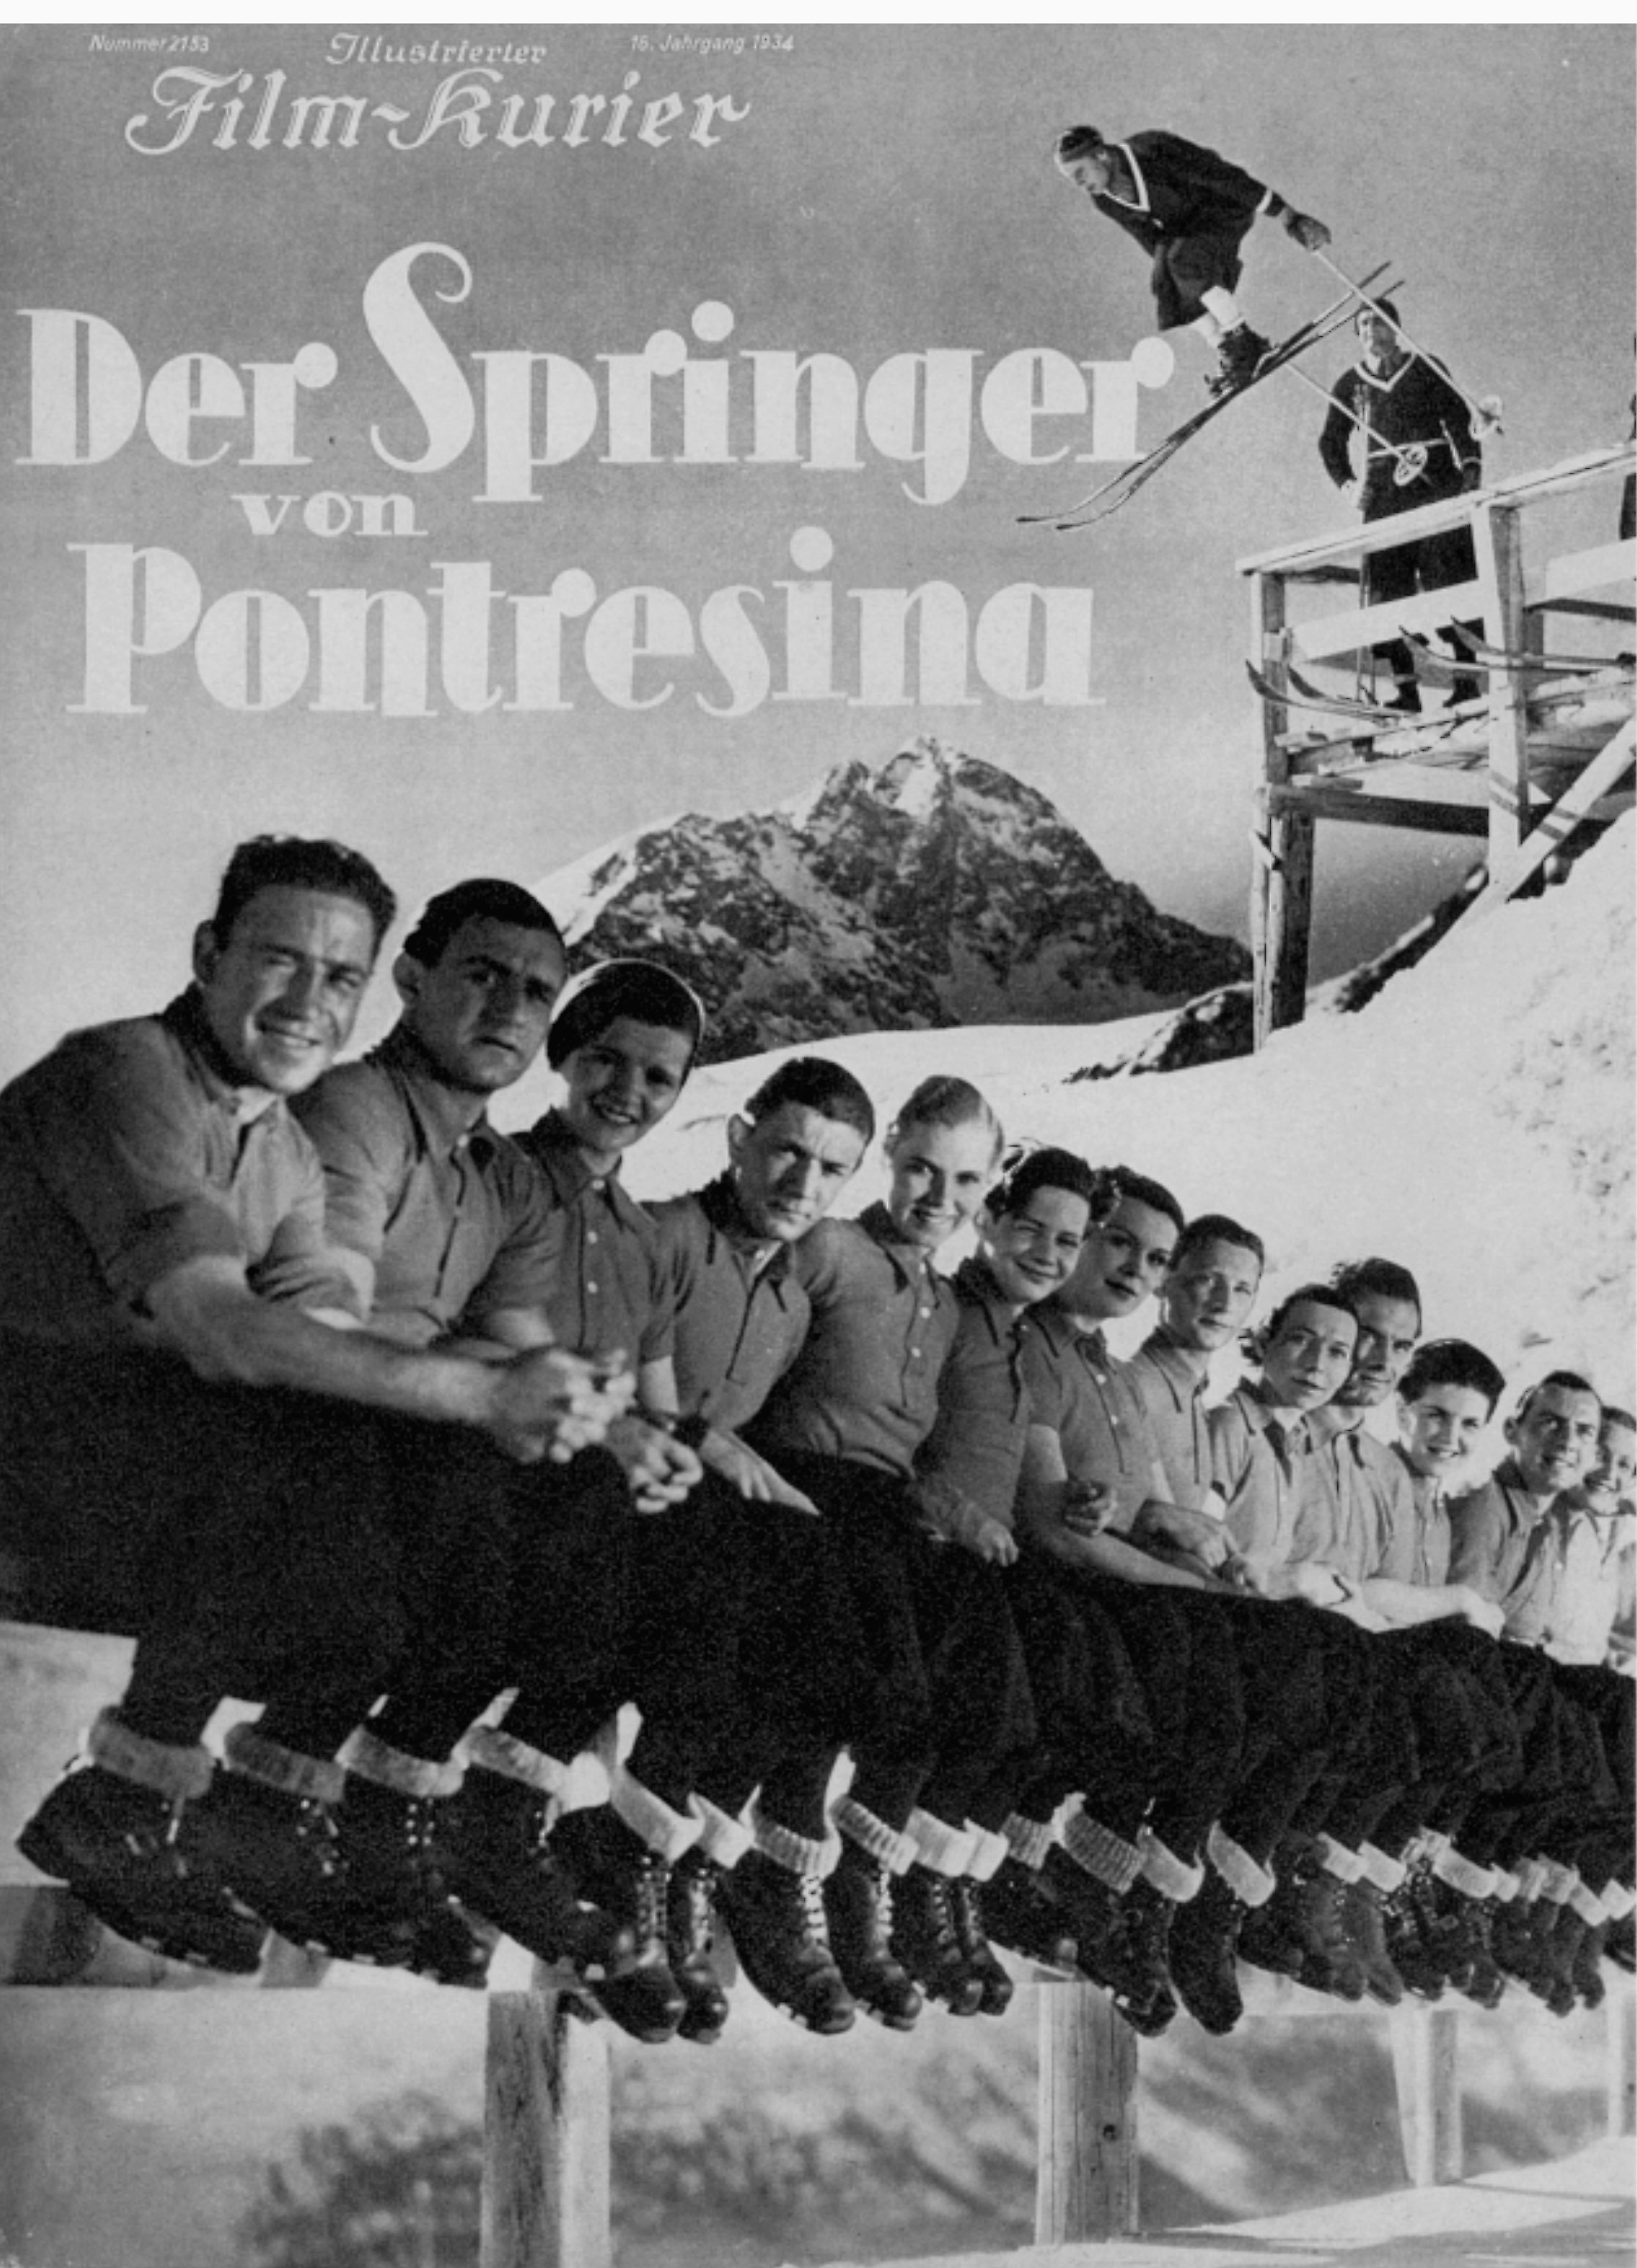 Der Springer von Pontresina (1934)